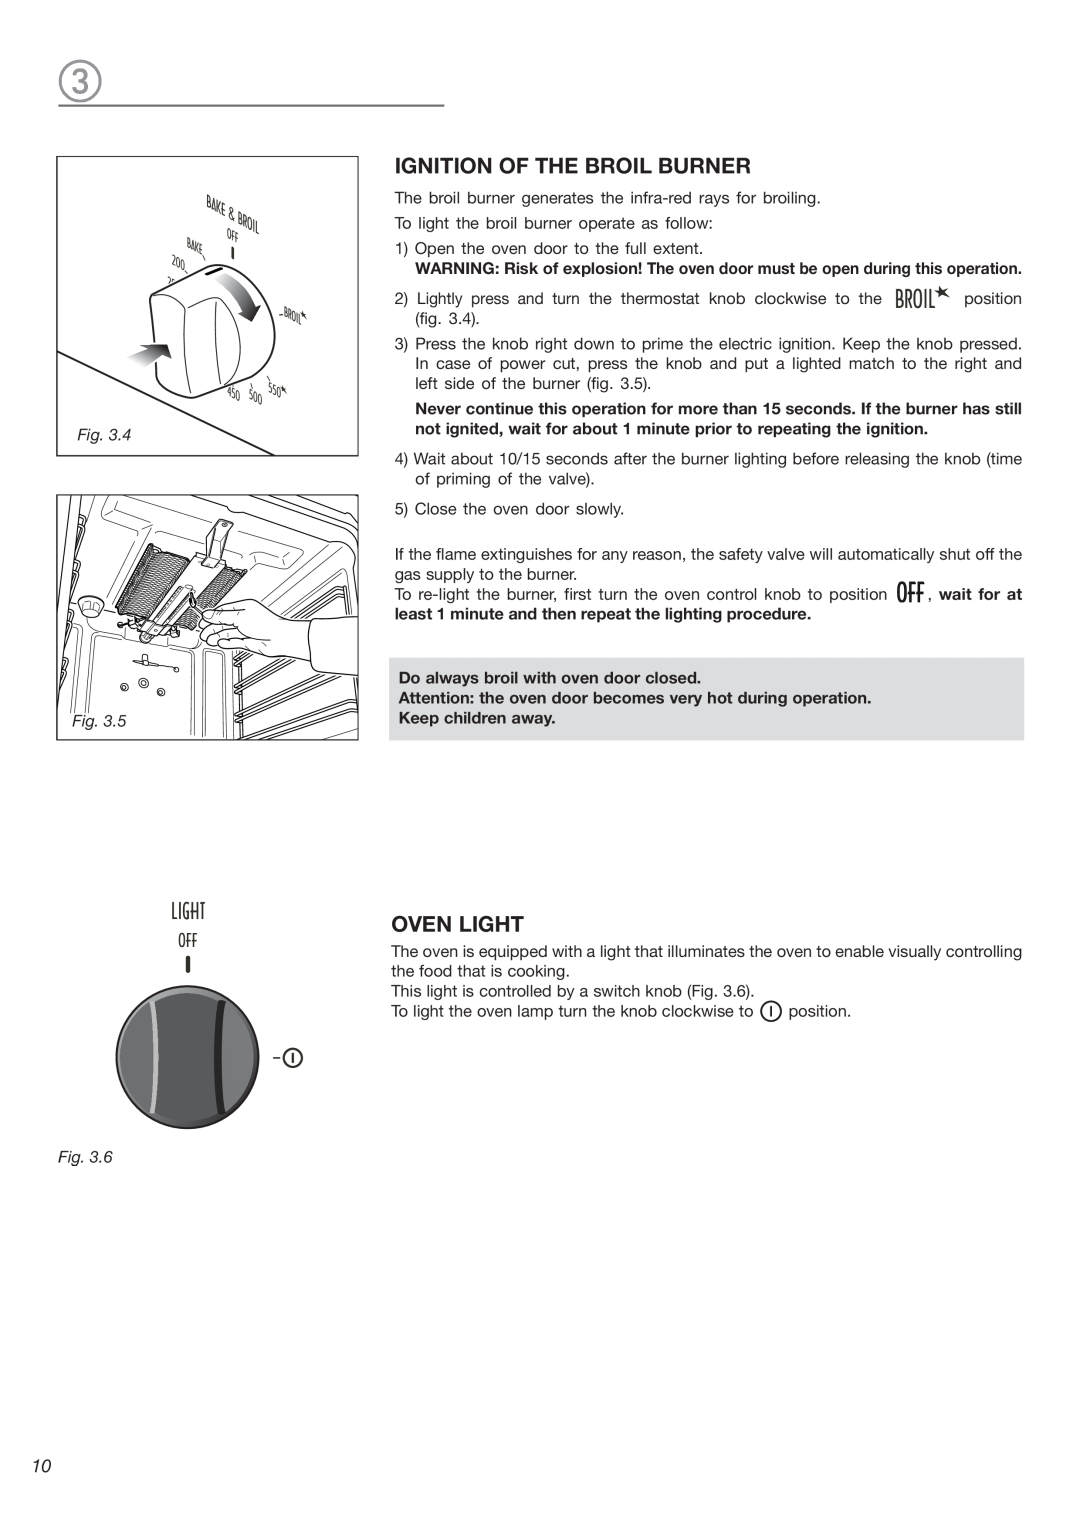 DeLonghi DEBIG 24 SS warranty Ignition Of The Broil Burner, Oven Light 